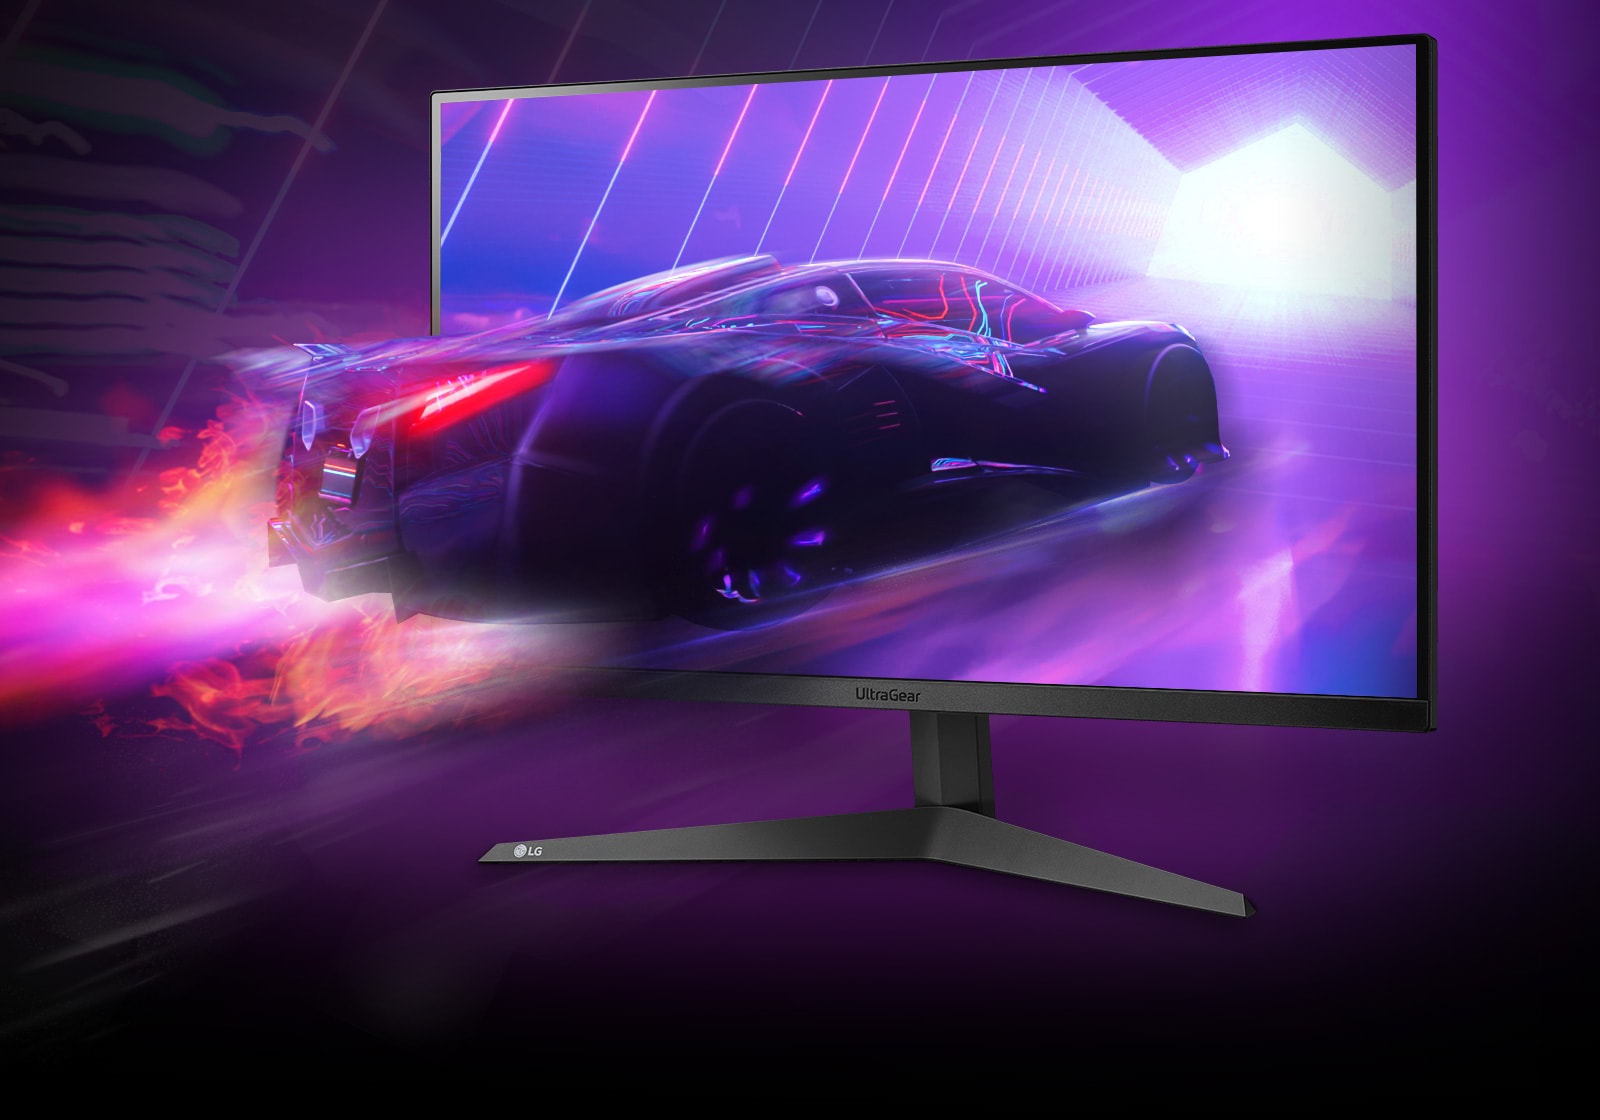 LG UltraGear Gaming Monitor 27 Inch Full HD | LG UAE